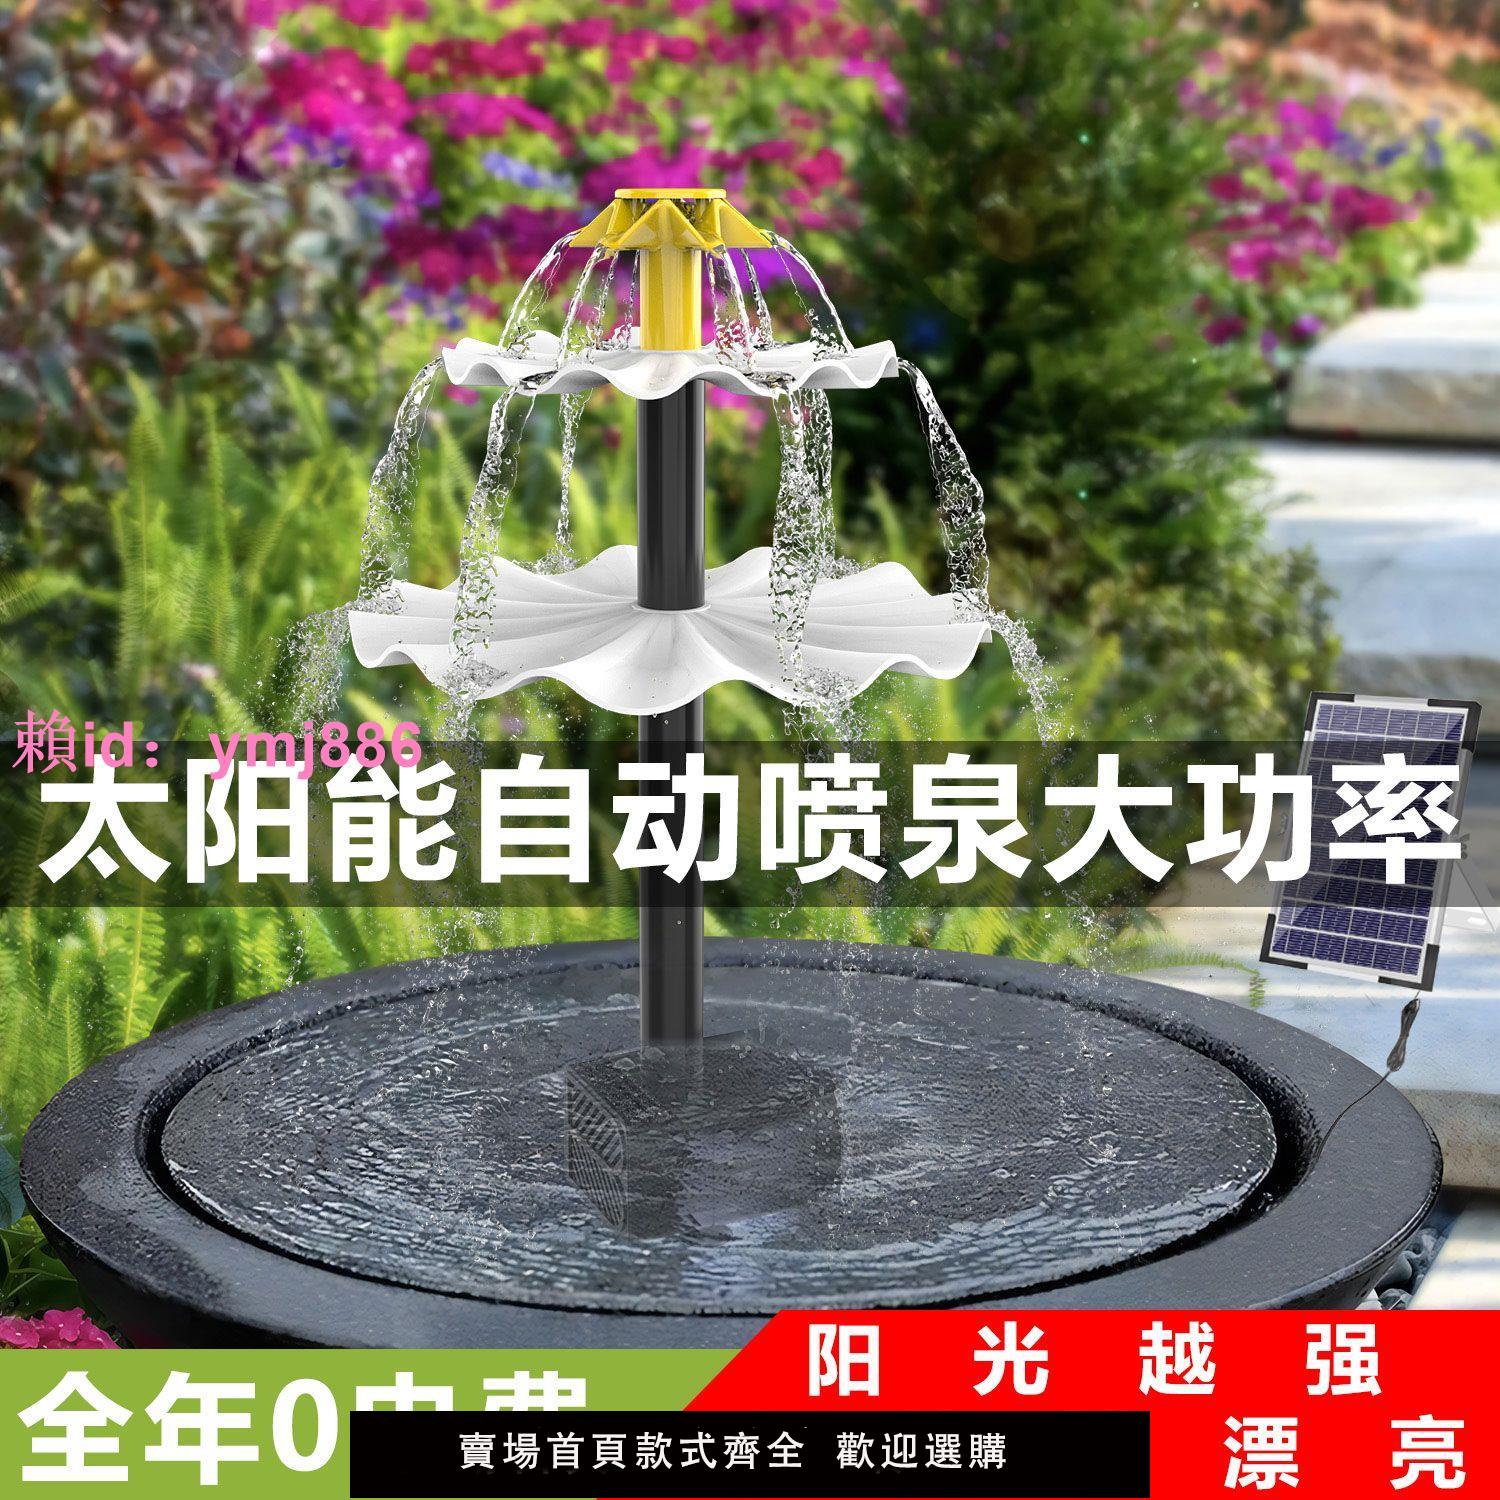 新款太陽能噴泉大功率庭院景觀盆鳥浴二層喂飲水器直驅自動水循環